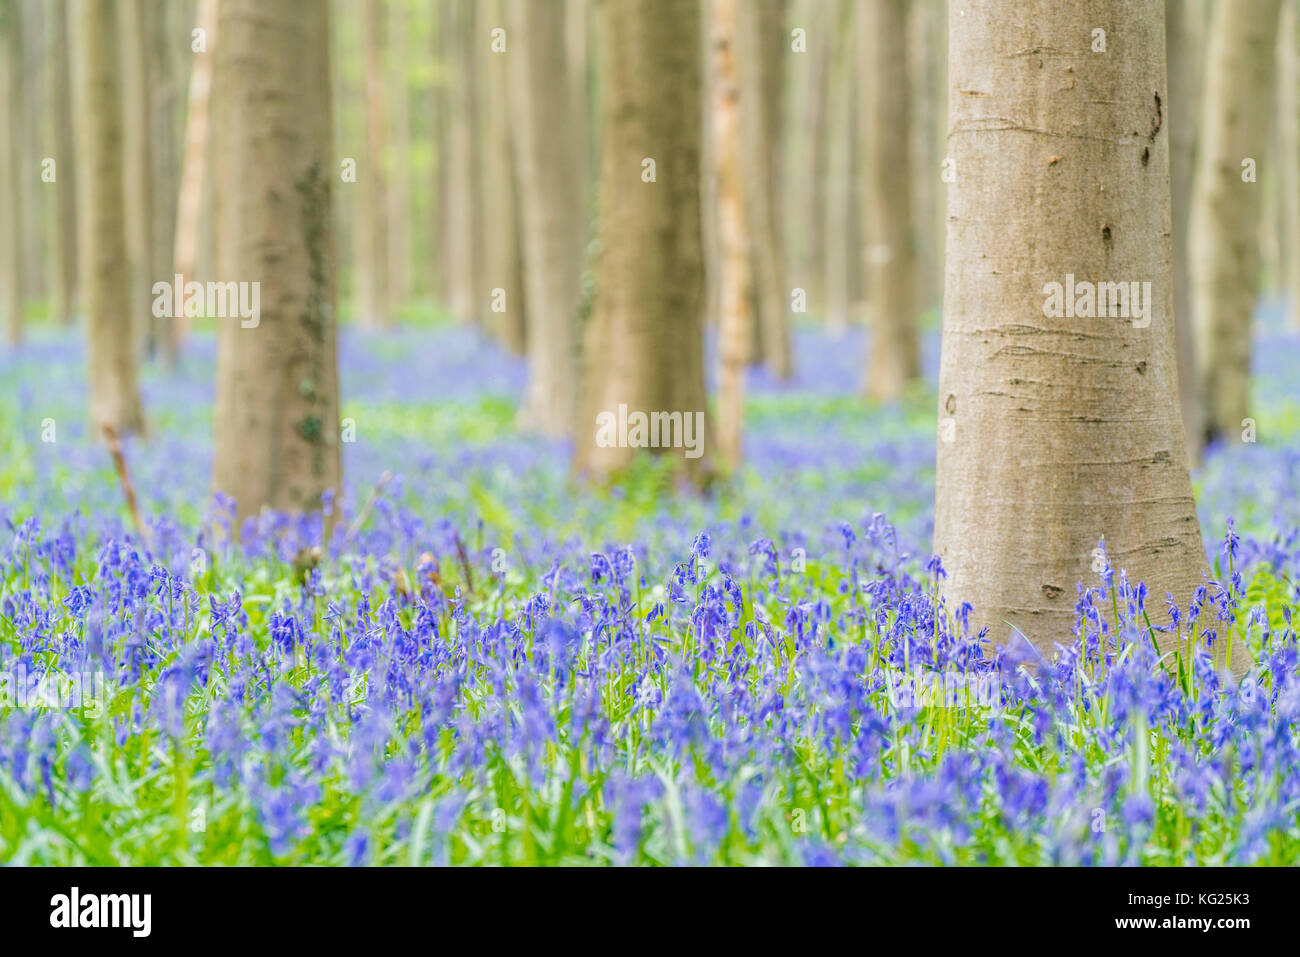 Beechwood with bluebell flowers on the ground, Halle, Flemish Brabant province, Flemish region, Belgium, Europe Stock Photo